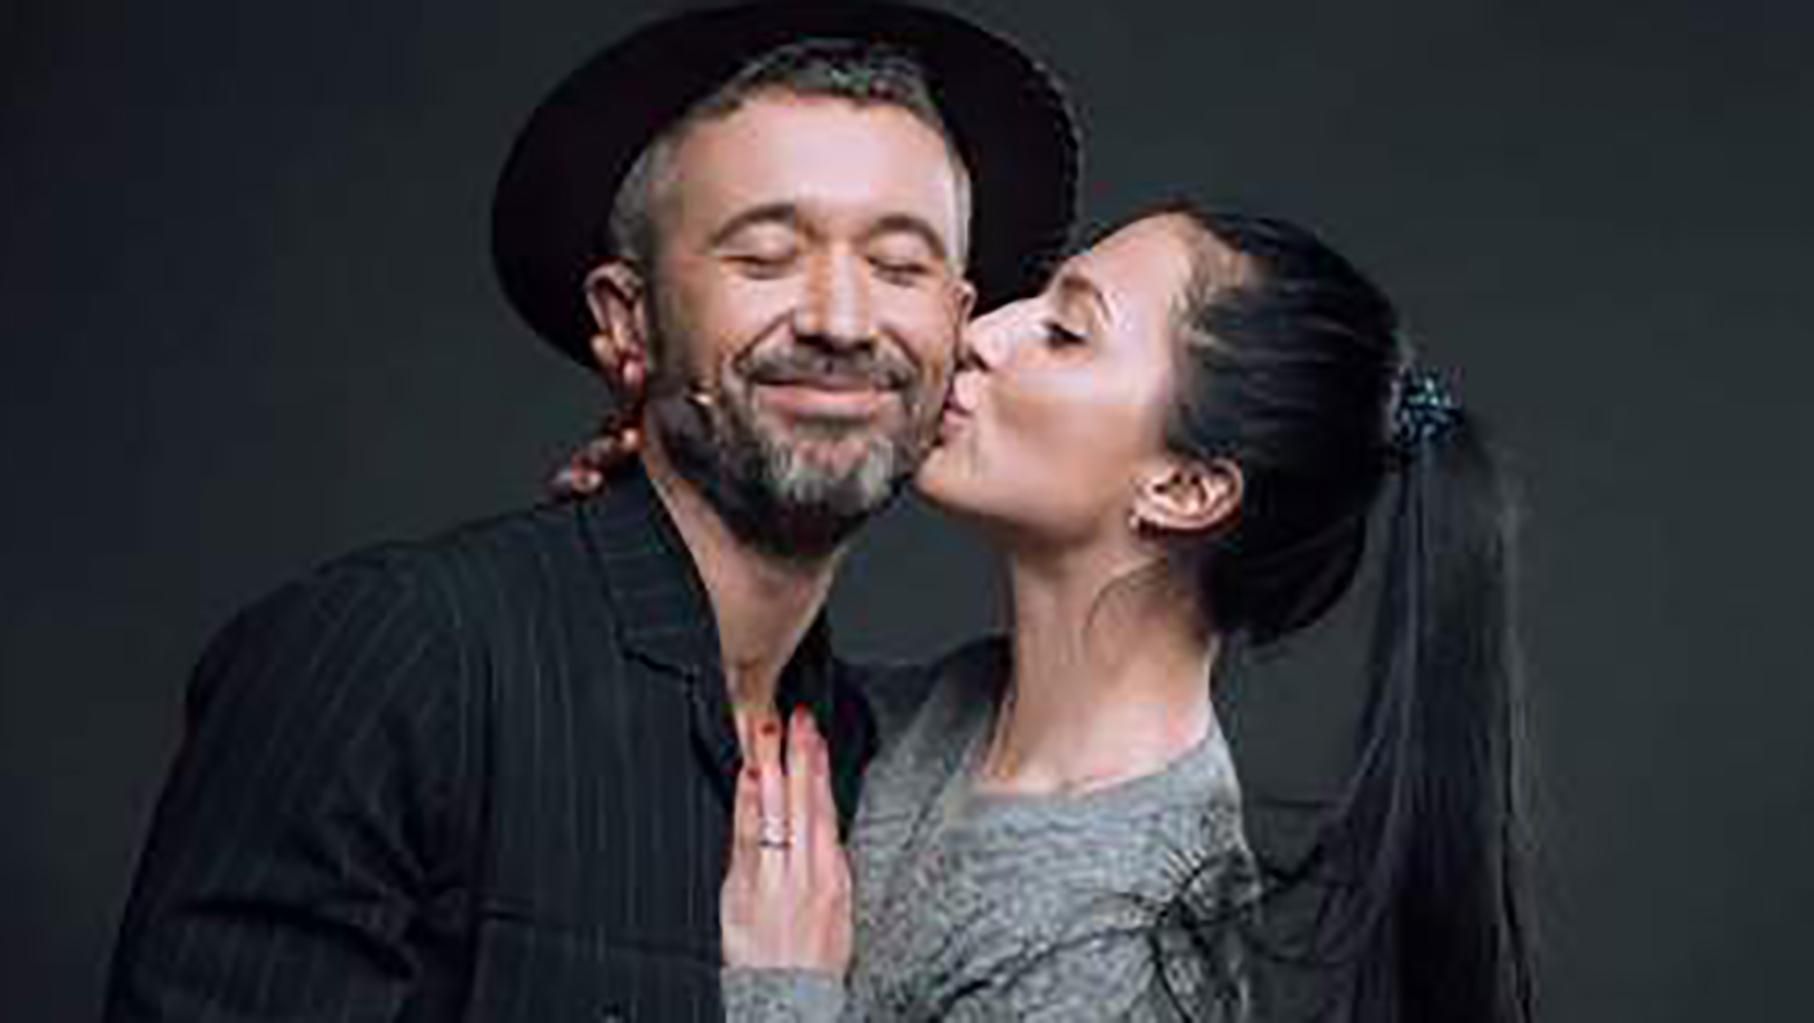 Сергій Бабкін з дружиною голими знялись на честь 10-ї річниці свого кохання